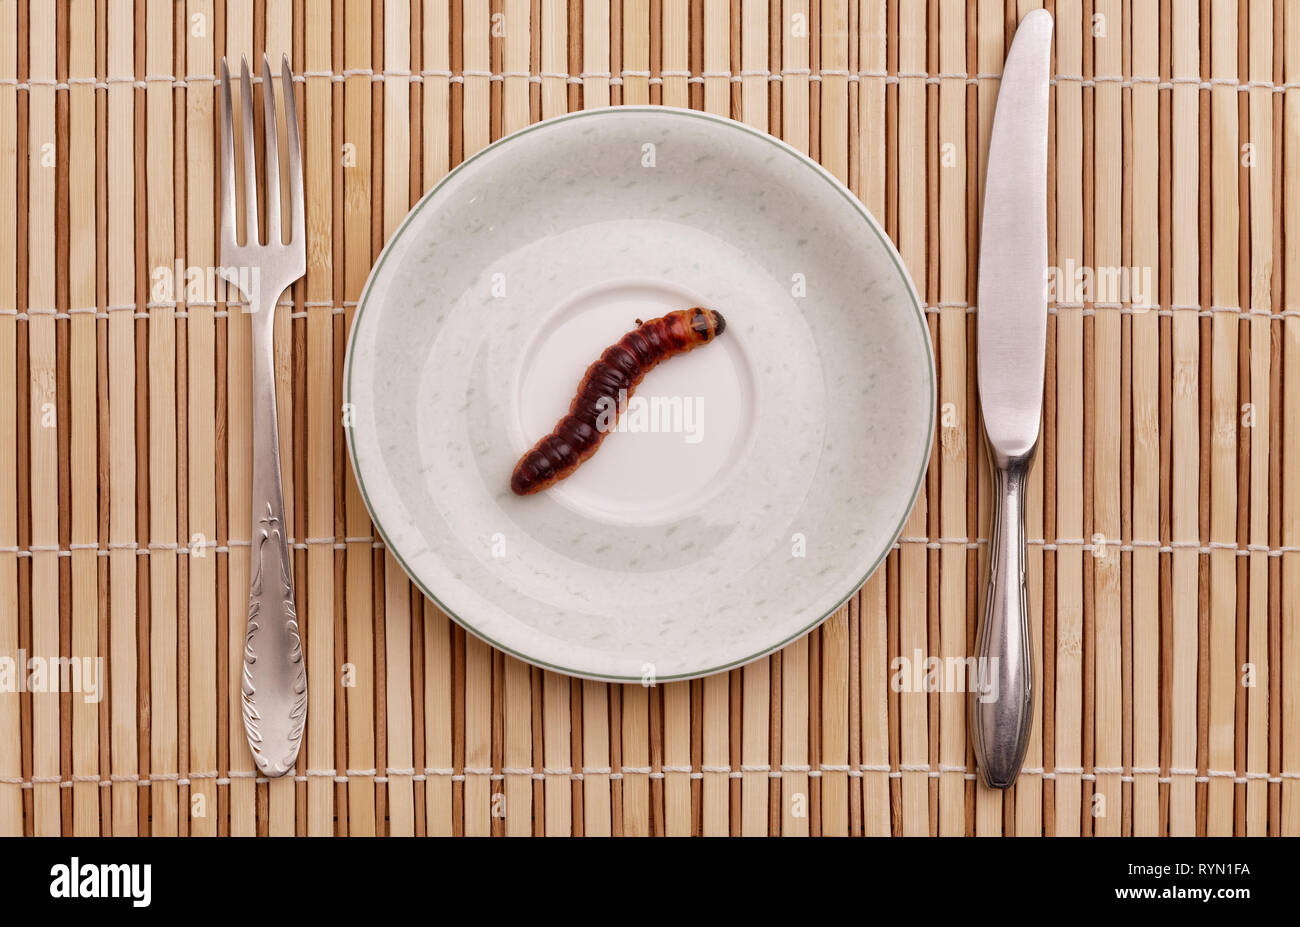 Falena di capra (Cossus cossus) caterpillar sulla piastra, food concept Foto Stock